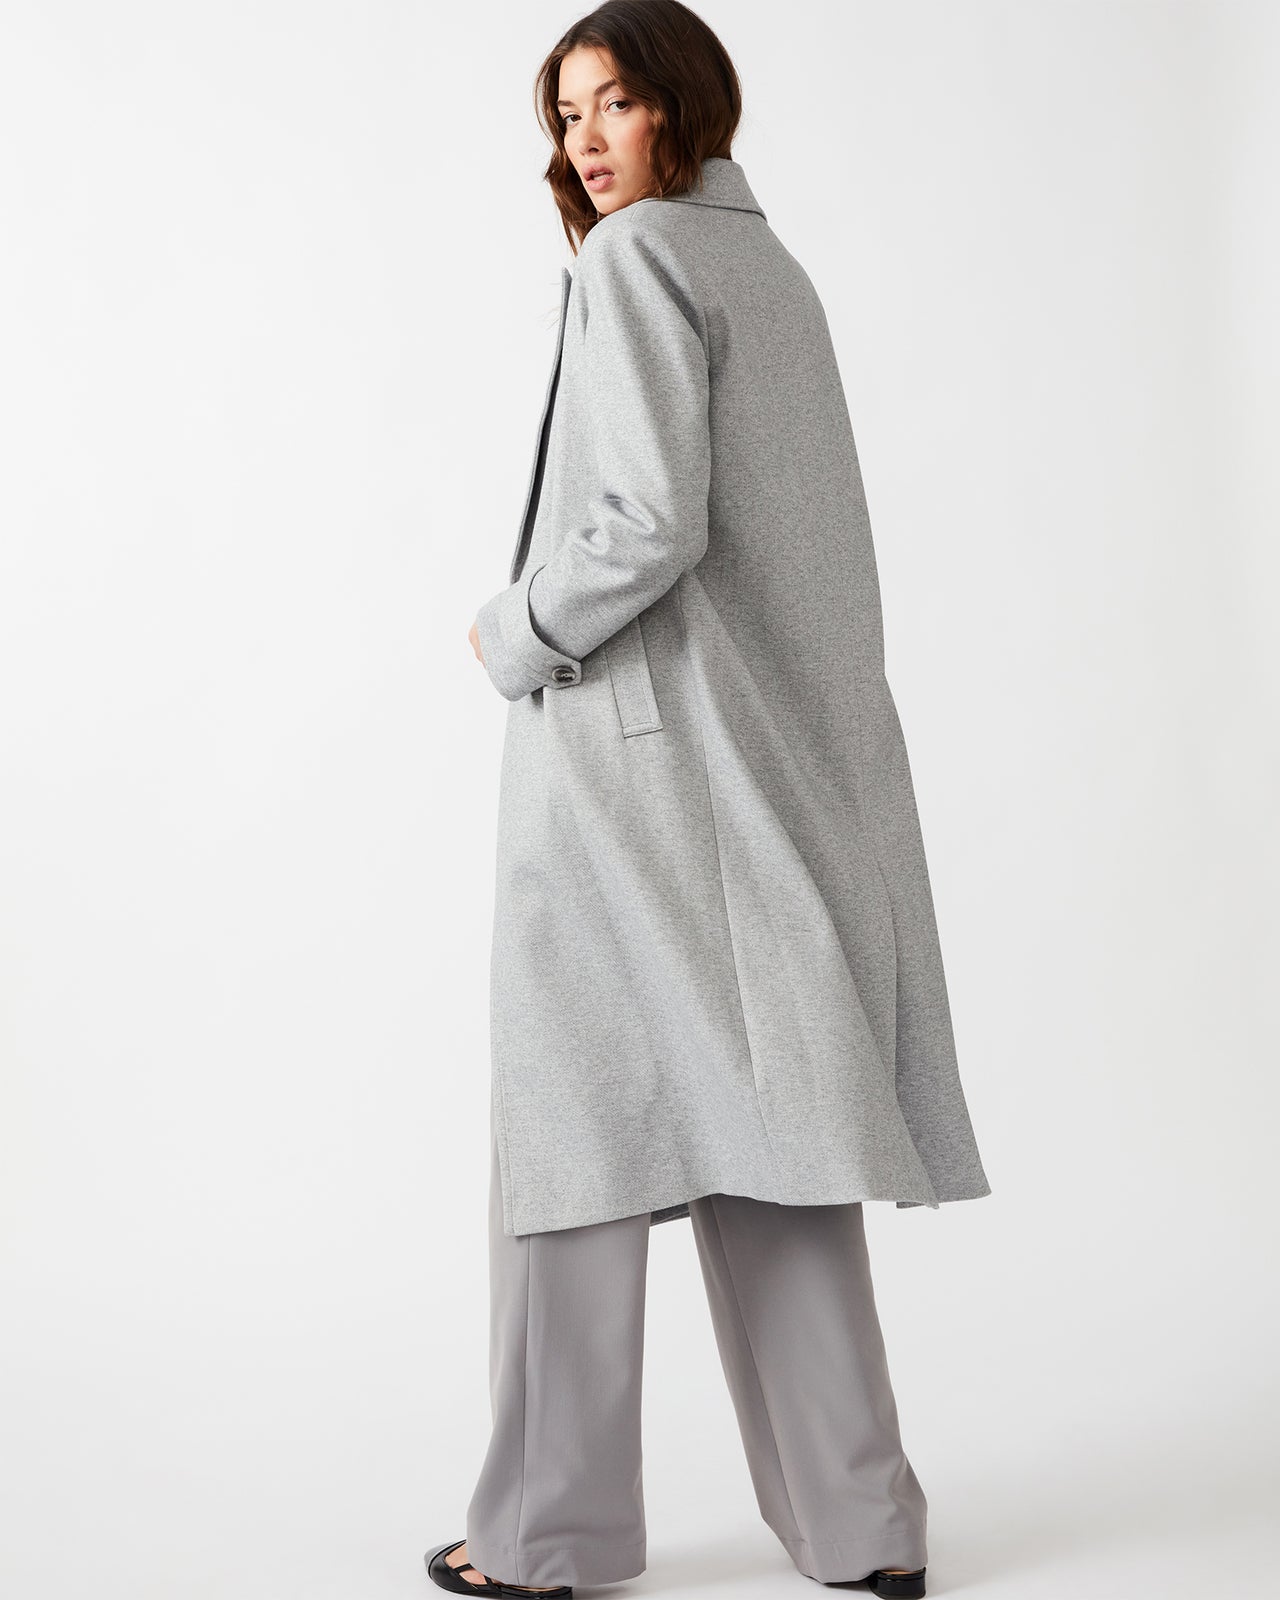 Prince Coat, Coat Jacket by Steve Madden | LIT Boutique